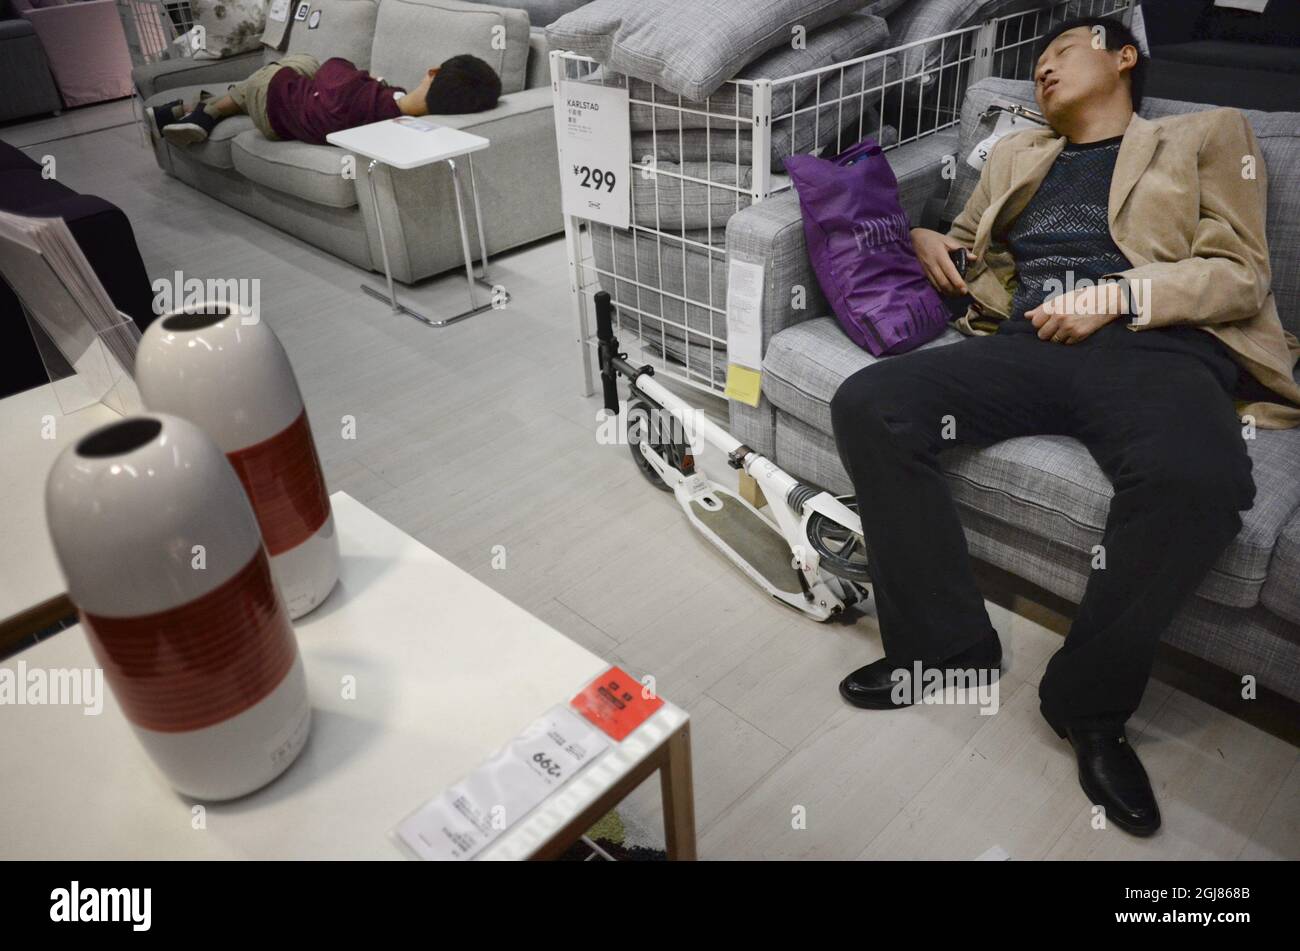 KINA 2013-09-27 Kunden in einem IKEA Möbelgeschäft in China September 2013. Kunden, die in den Betten und Sofas von IKEA einschlafen, sind in China nicht ungewöhnlich. Aber thatâ ist laut IKEA-Management kein Problem – Wir heißen alle willkommen, die in unsere Läden kommen wollen. Alle unsere Besucher sind potenzielle Kunden, sagte Linda Xu, Öffentlichkeitsarbeit für den Ikea-Grouo in China, laut der Schwedischen Zeitung DN, die Le Figaro quoting. Seit sich Ikea vor 15 Jahren in China etabliert hat, ist das Land zu einem ihrer wichtigsten Märkte geworden. Fast 15 Millionen Menschen besuchten die 11 Geschäfte in China la Stockfoto